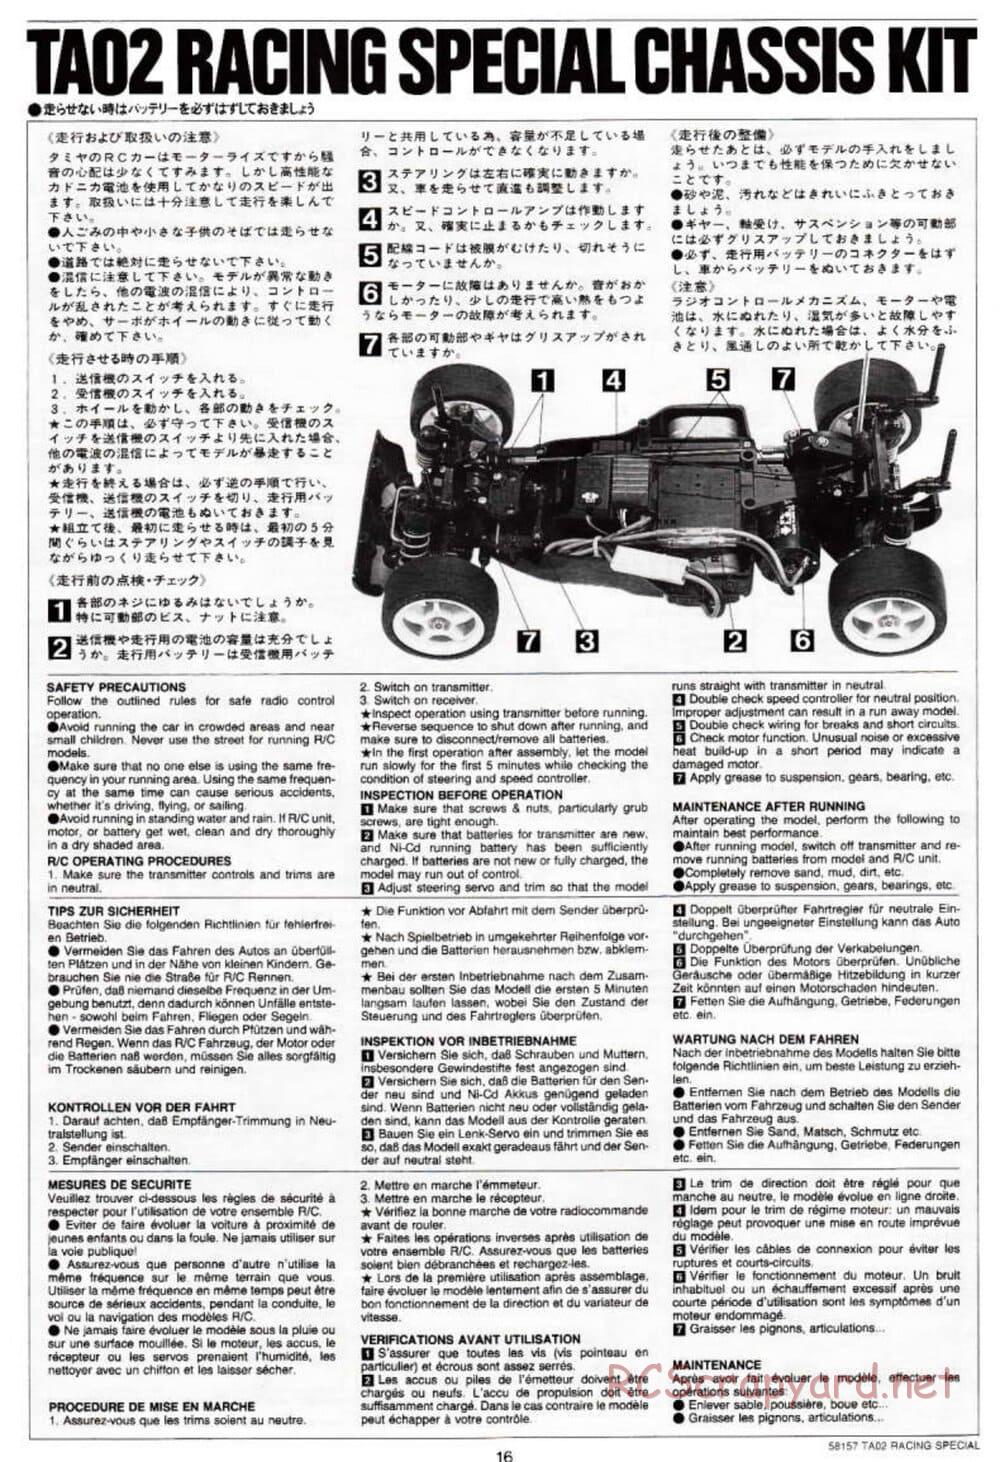 Tamiya - TA-02RS Chassis - Manual - Page 16